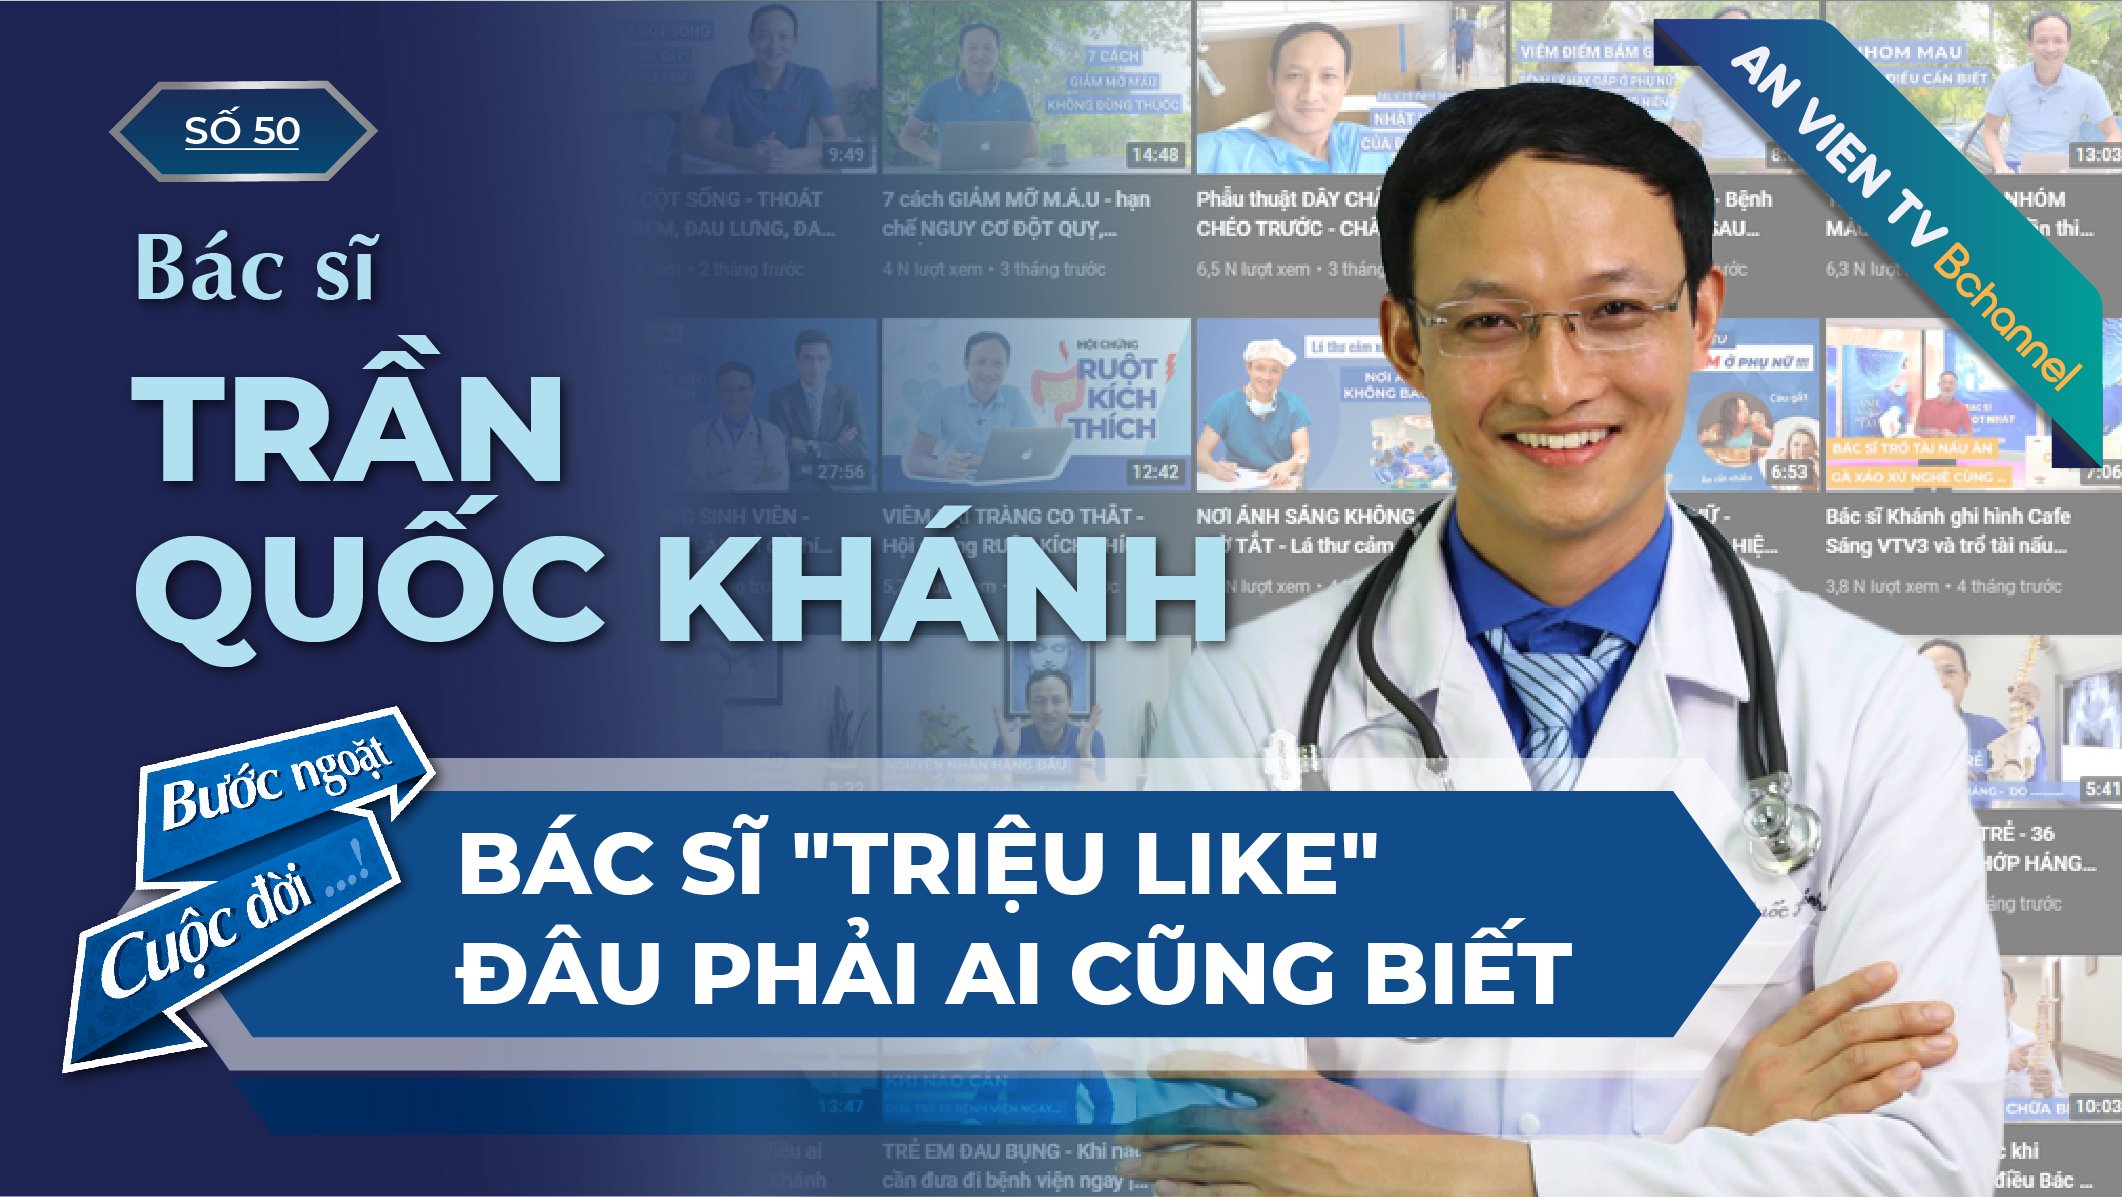 Bác sĩ Trần Quốc Khánh - Bác sĩ "nghìn like" mạng xã hội | Bước Ngoặt Cuộc Đời Số 50